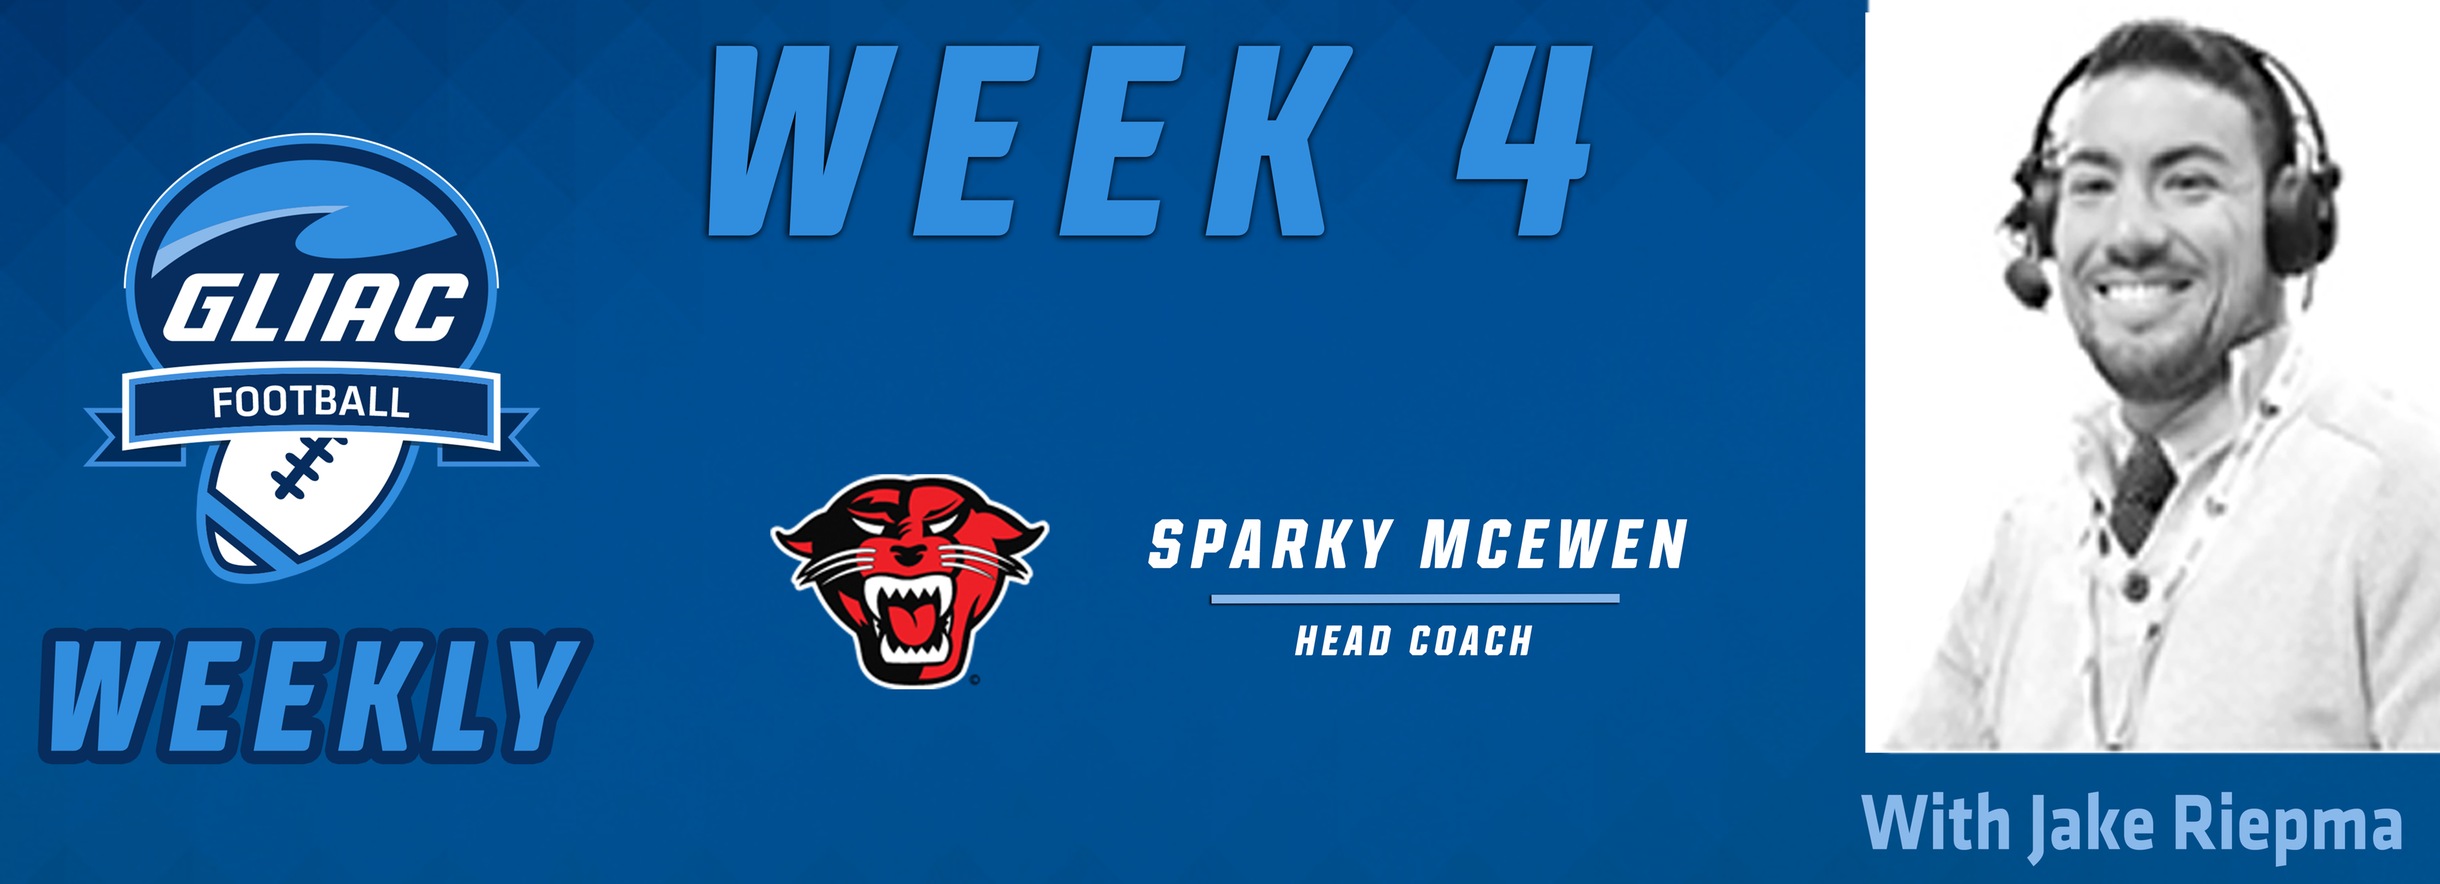 Football Weekly - Week 4 | DU Sparky McEwen